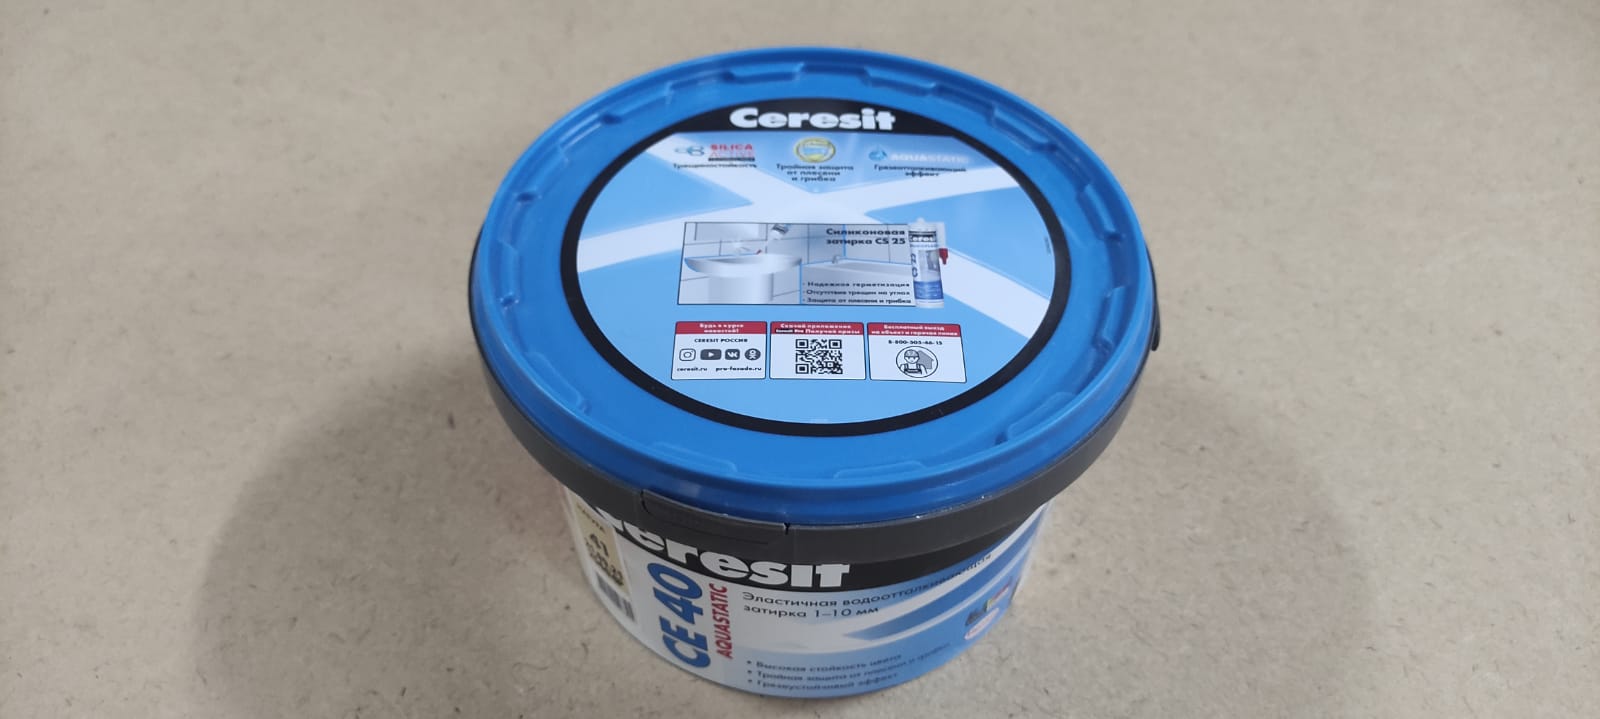 Эластичная водоотталкивающая затирка Ceresit CE 40 aquastatic 2 кг (цвет: натура)